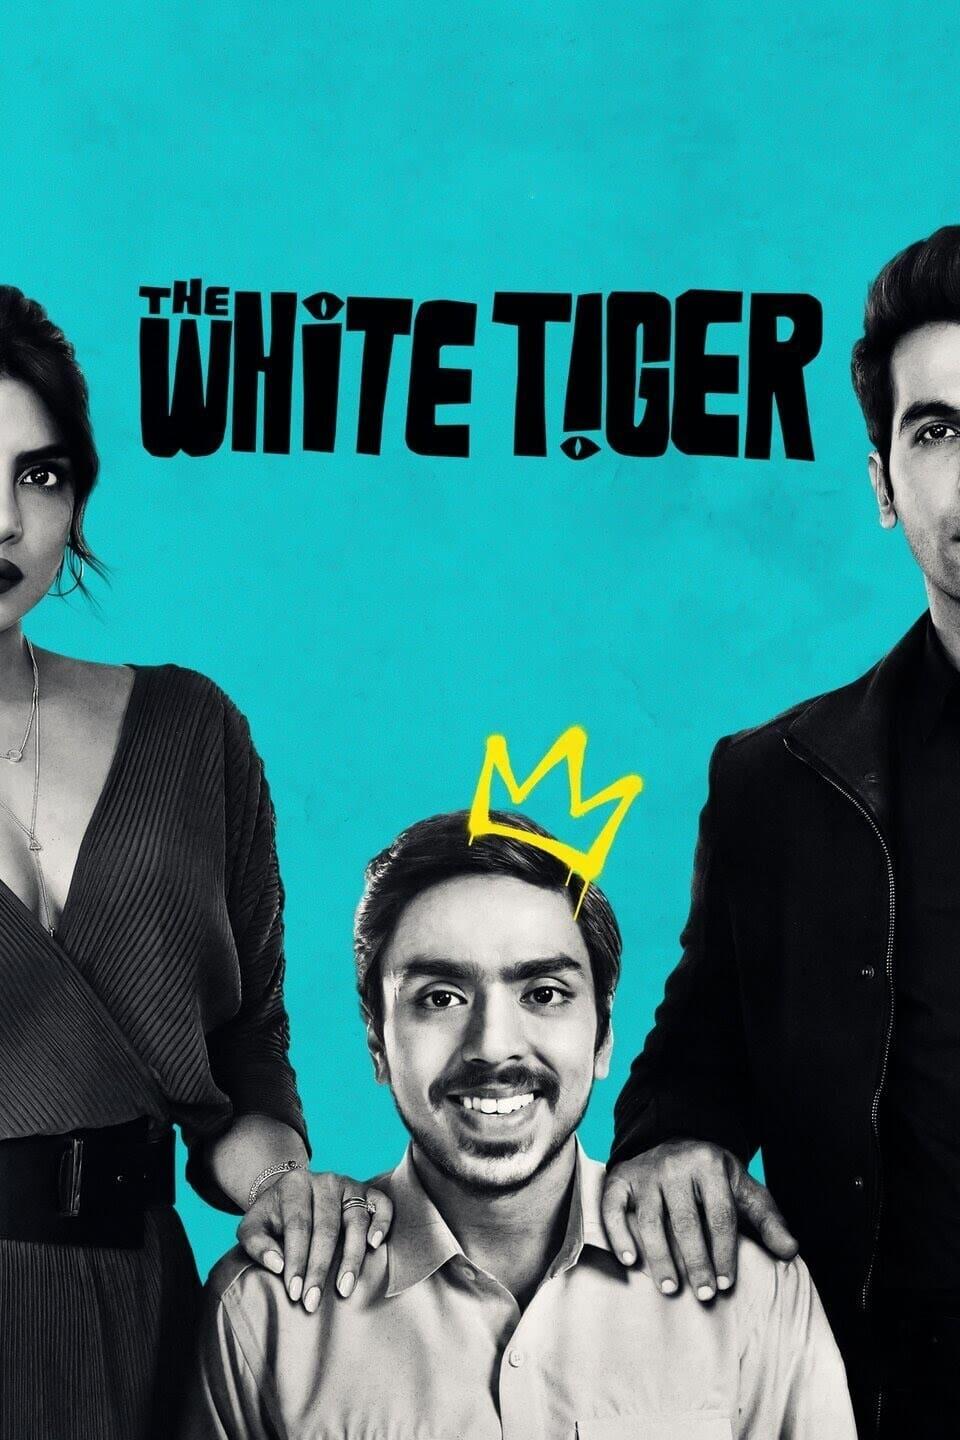 Der weiße Tiger poster